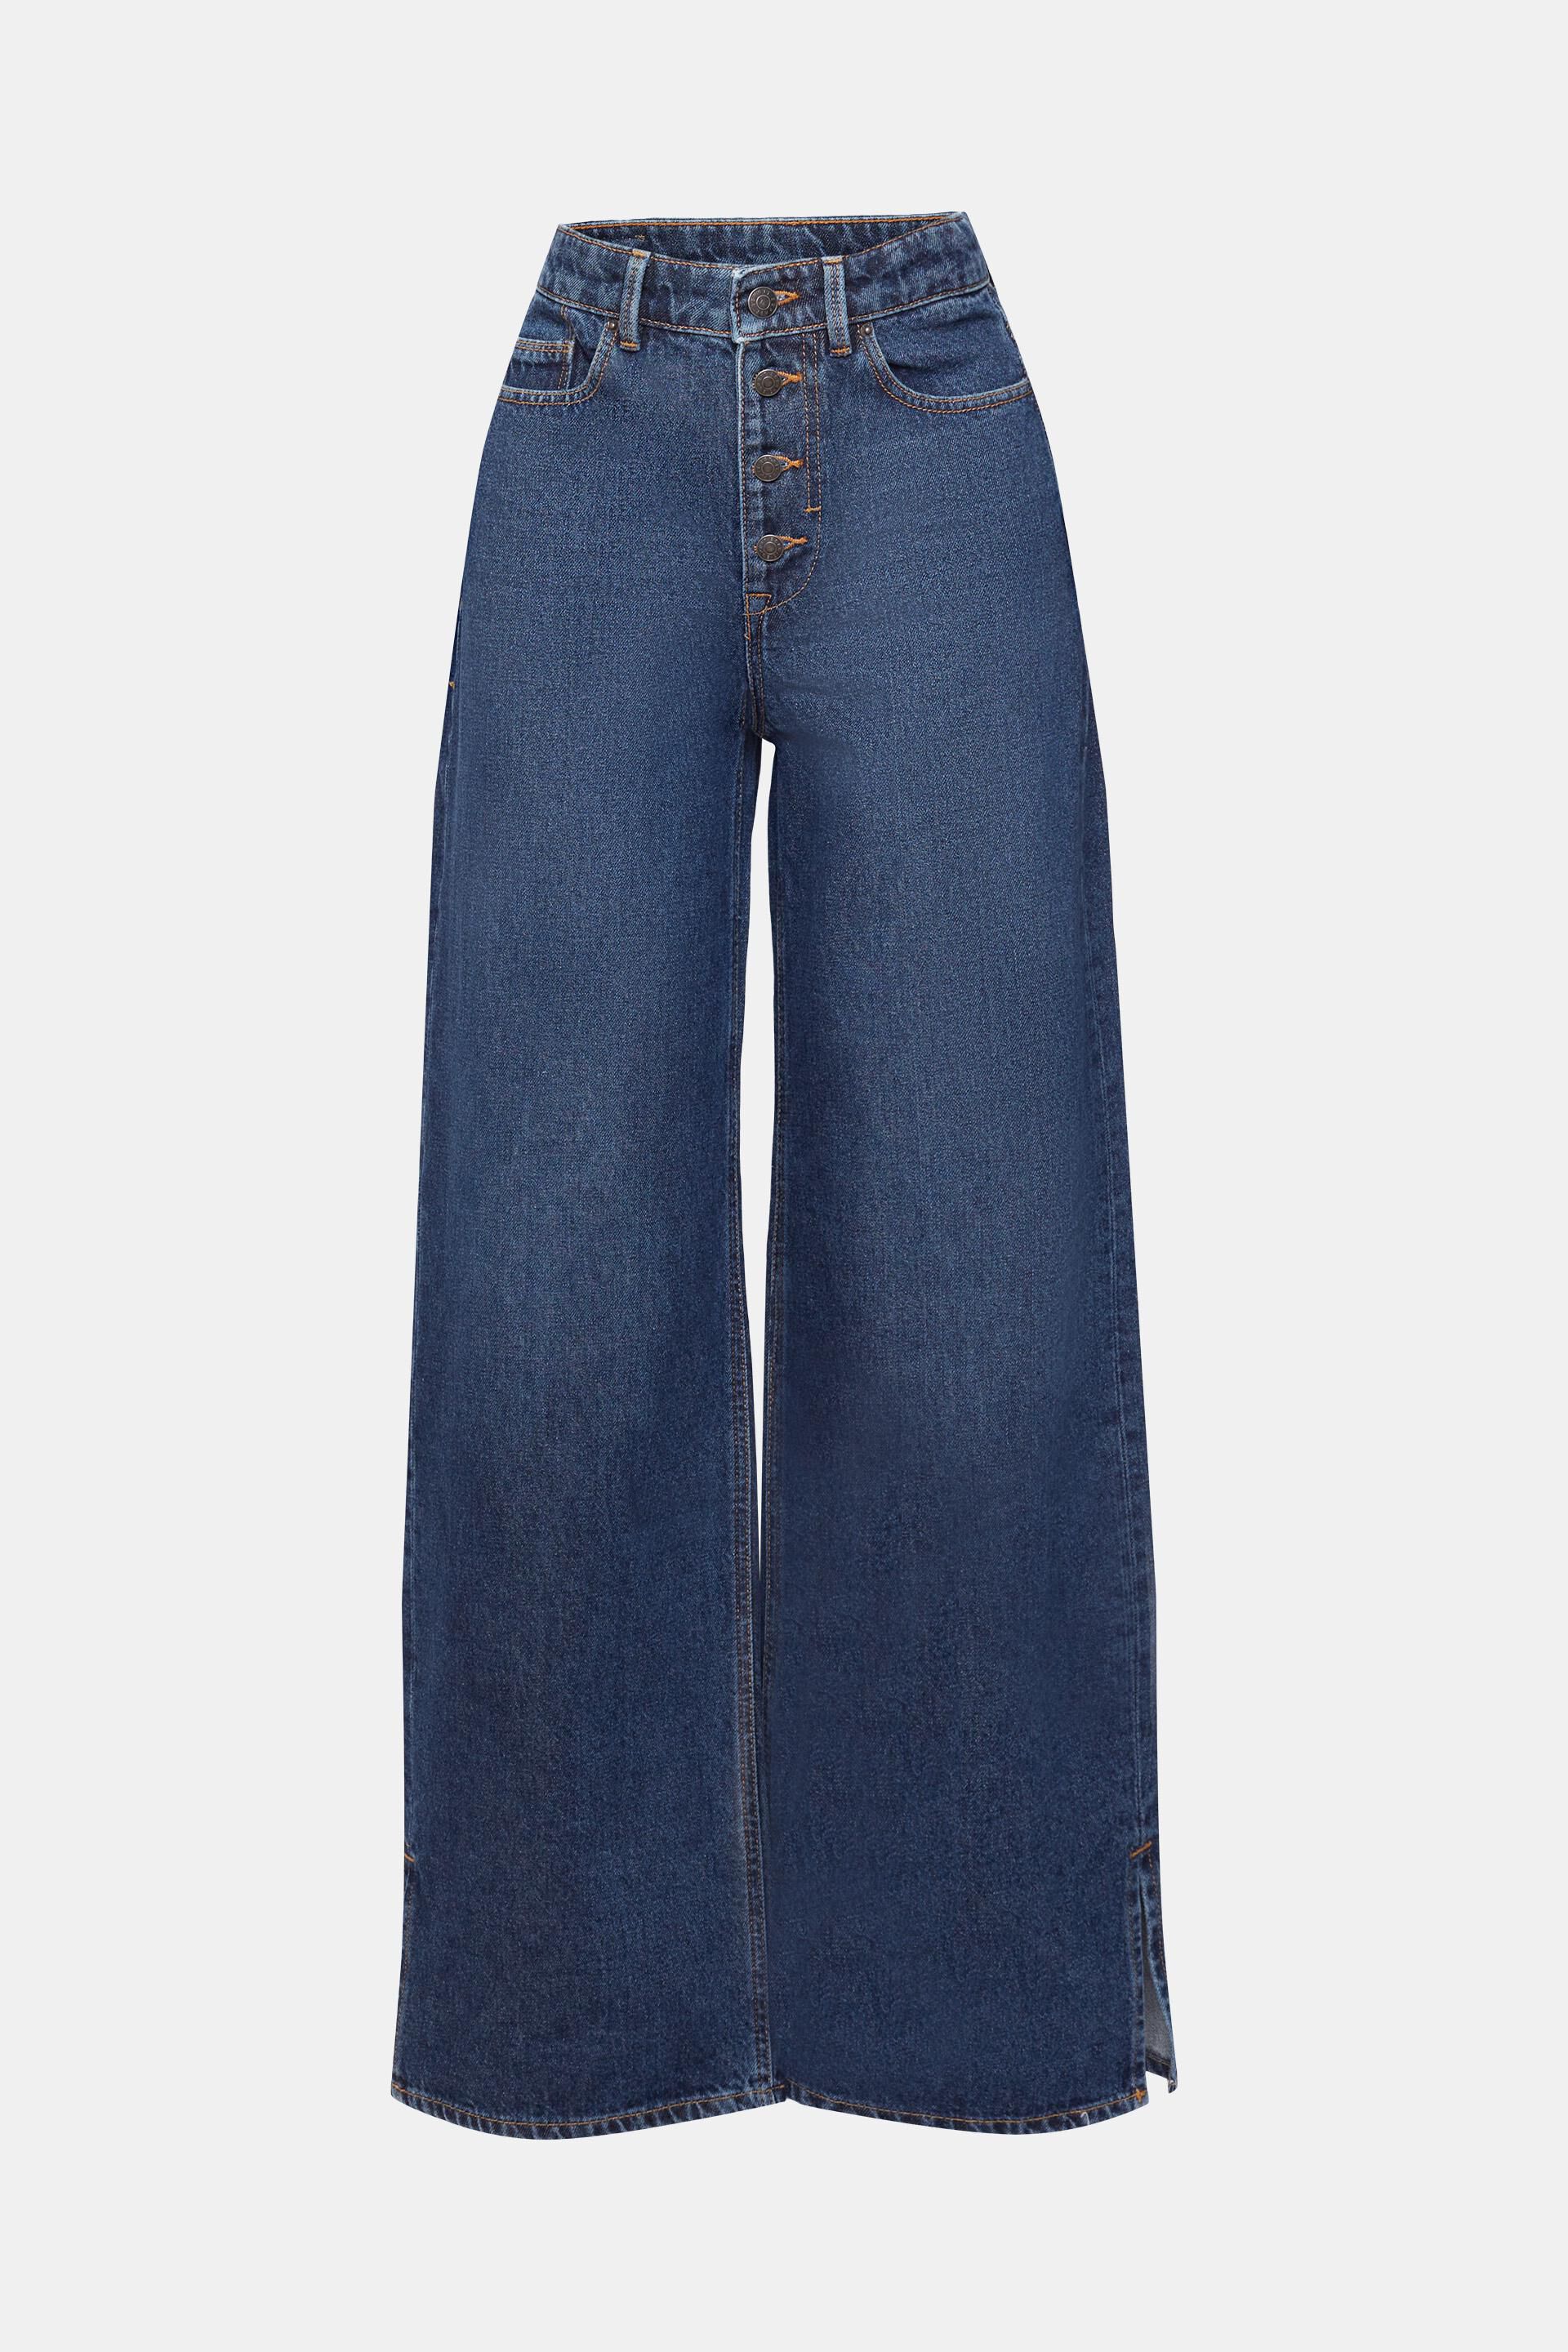 baumwoll-jeans mit weitem schnitt in Blau Damen Bekleidung Jeans Ausgestellte Jeans SELECTED Baumwolle Femme laura 